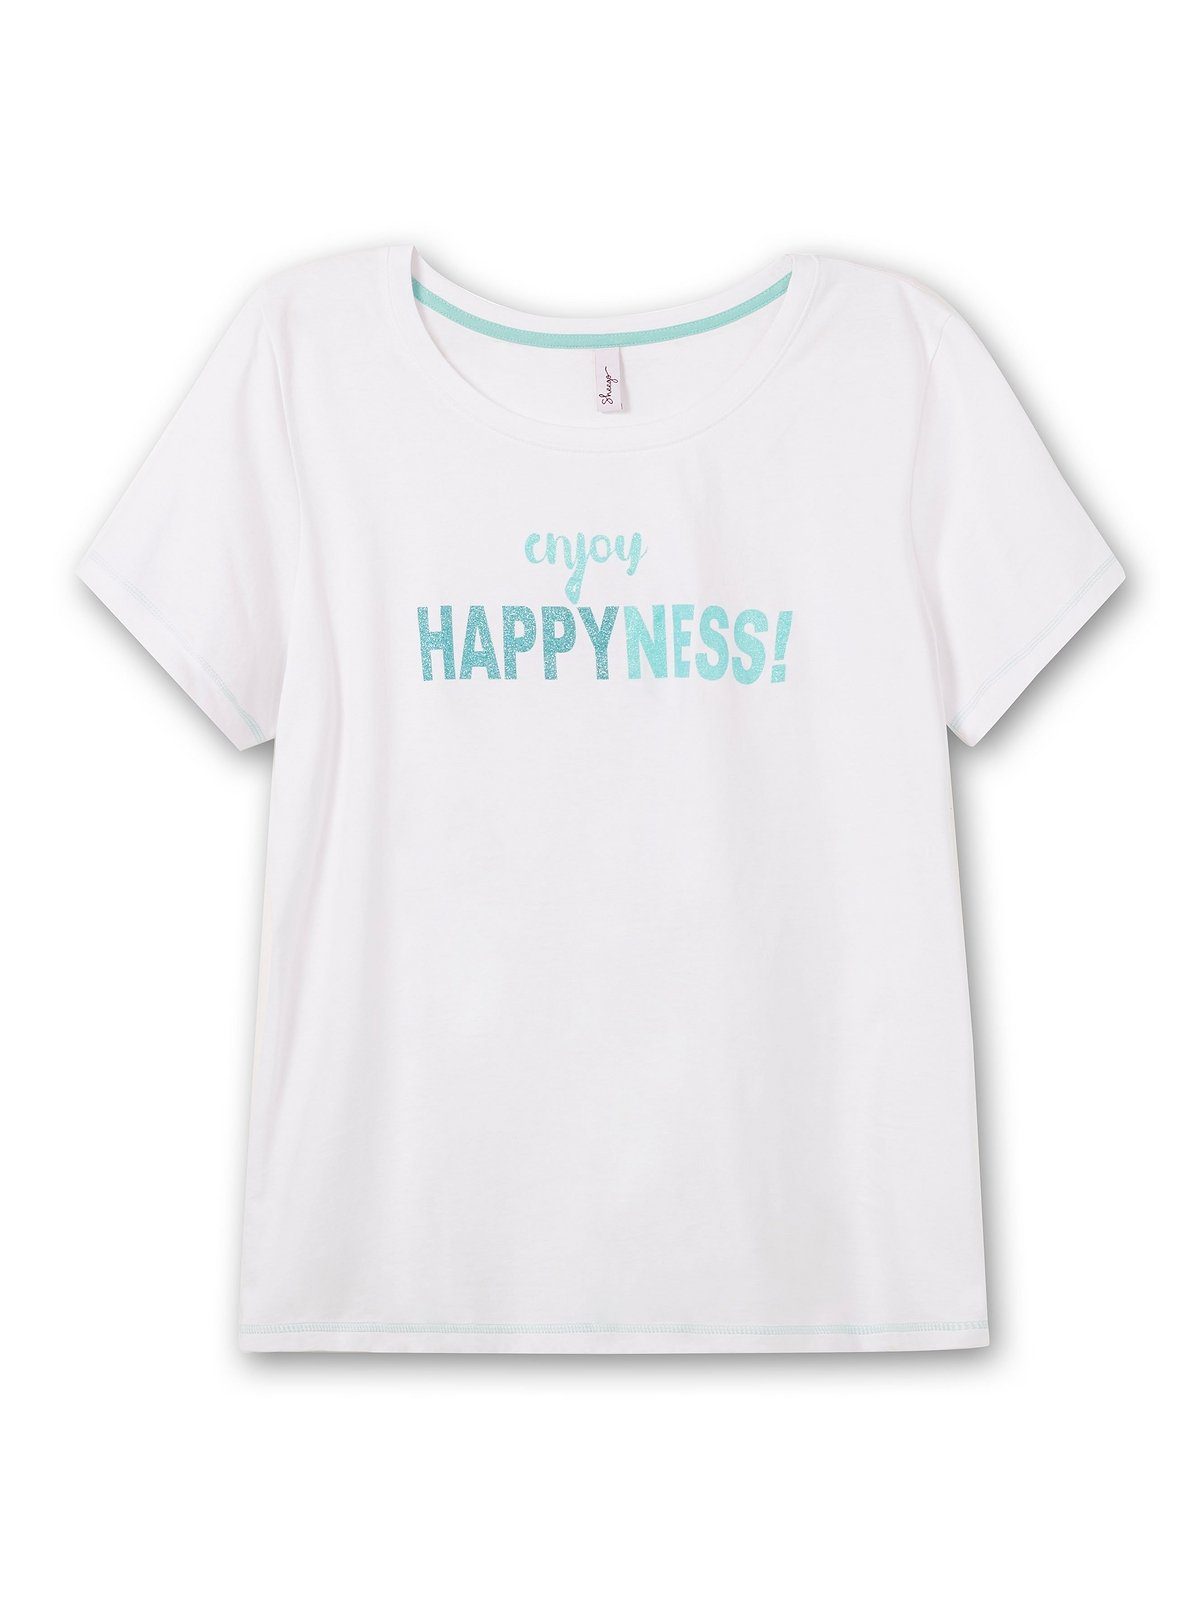 Sheego T-Shirt Große Größen bedruckt tailliert mit leicht weiß Wordingprint